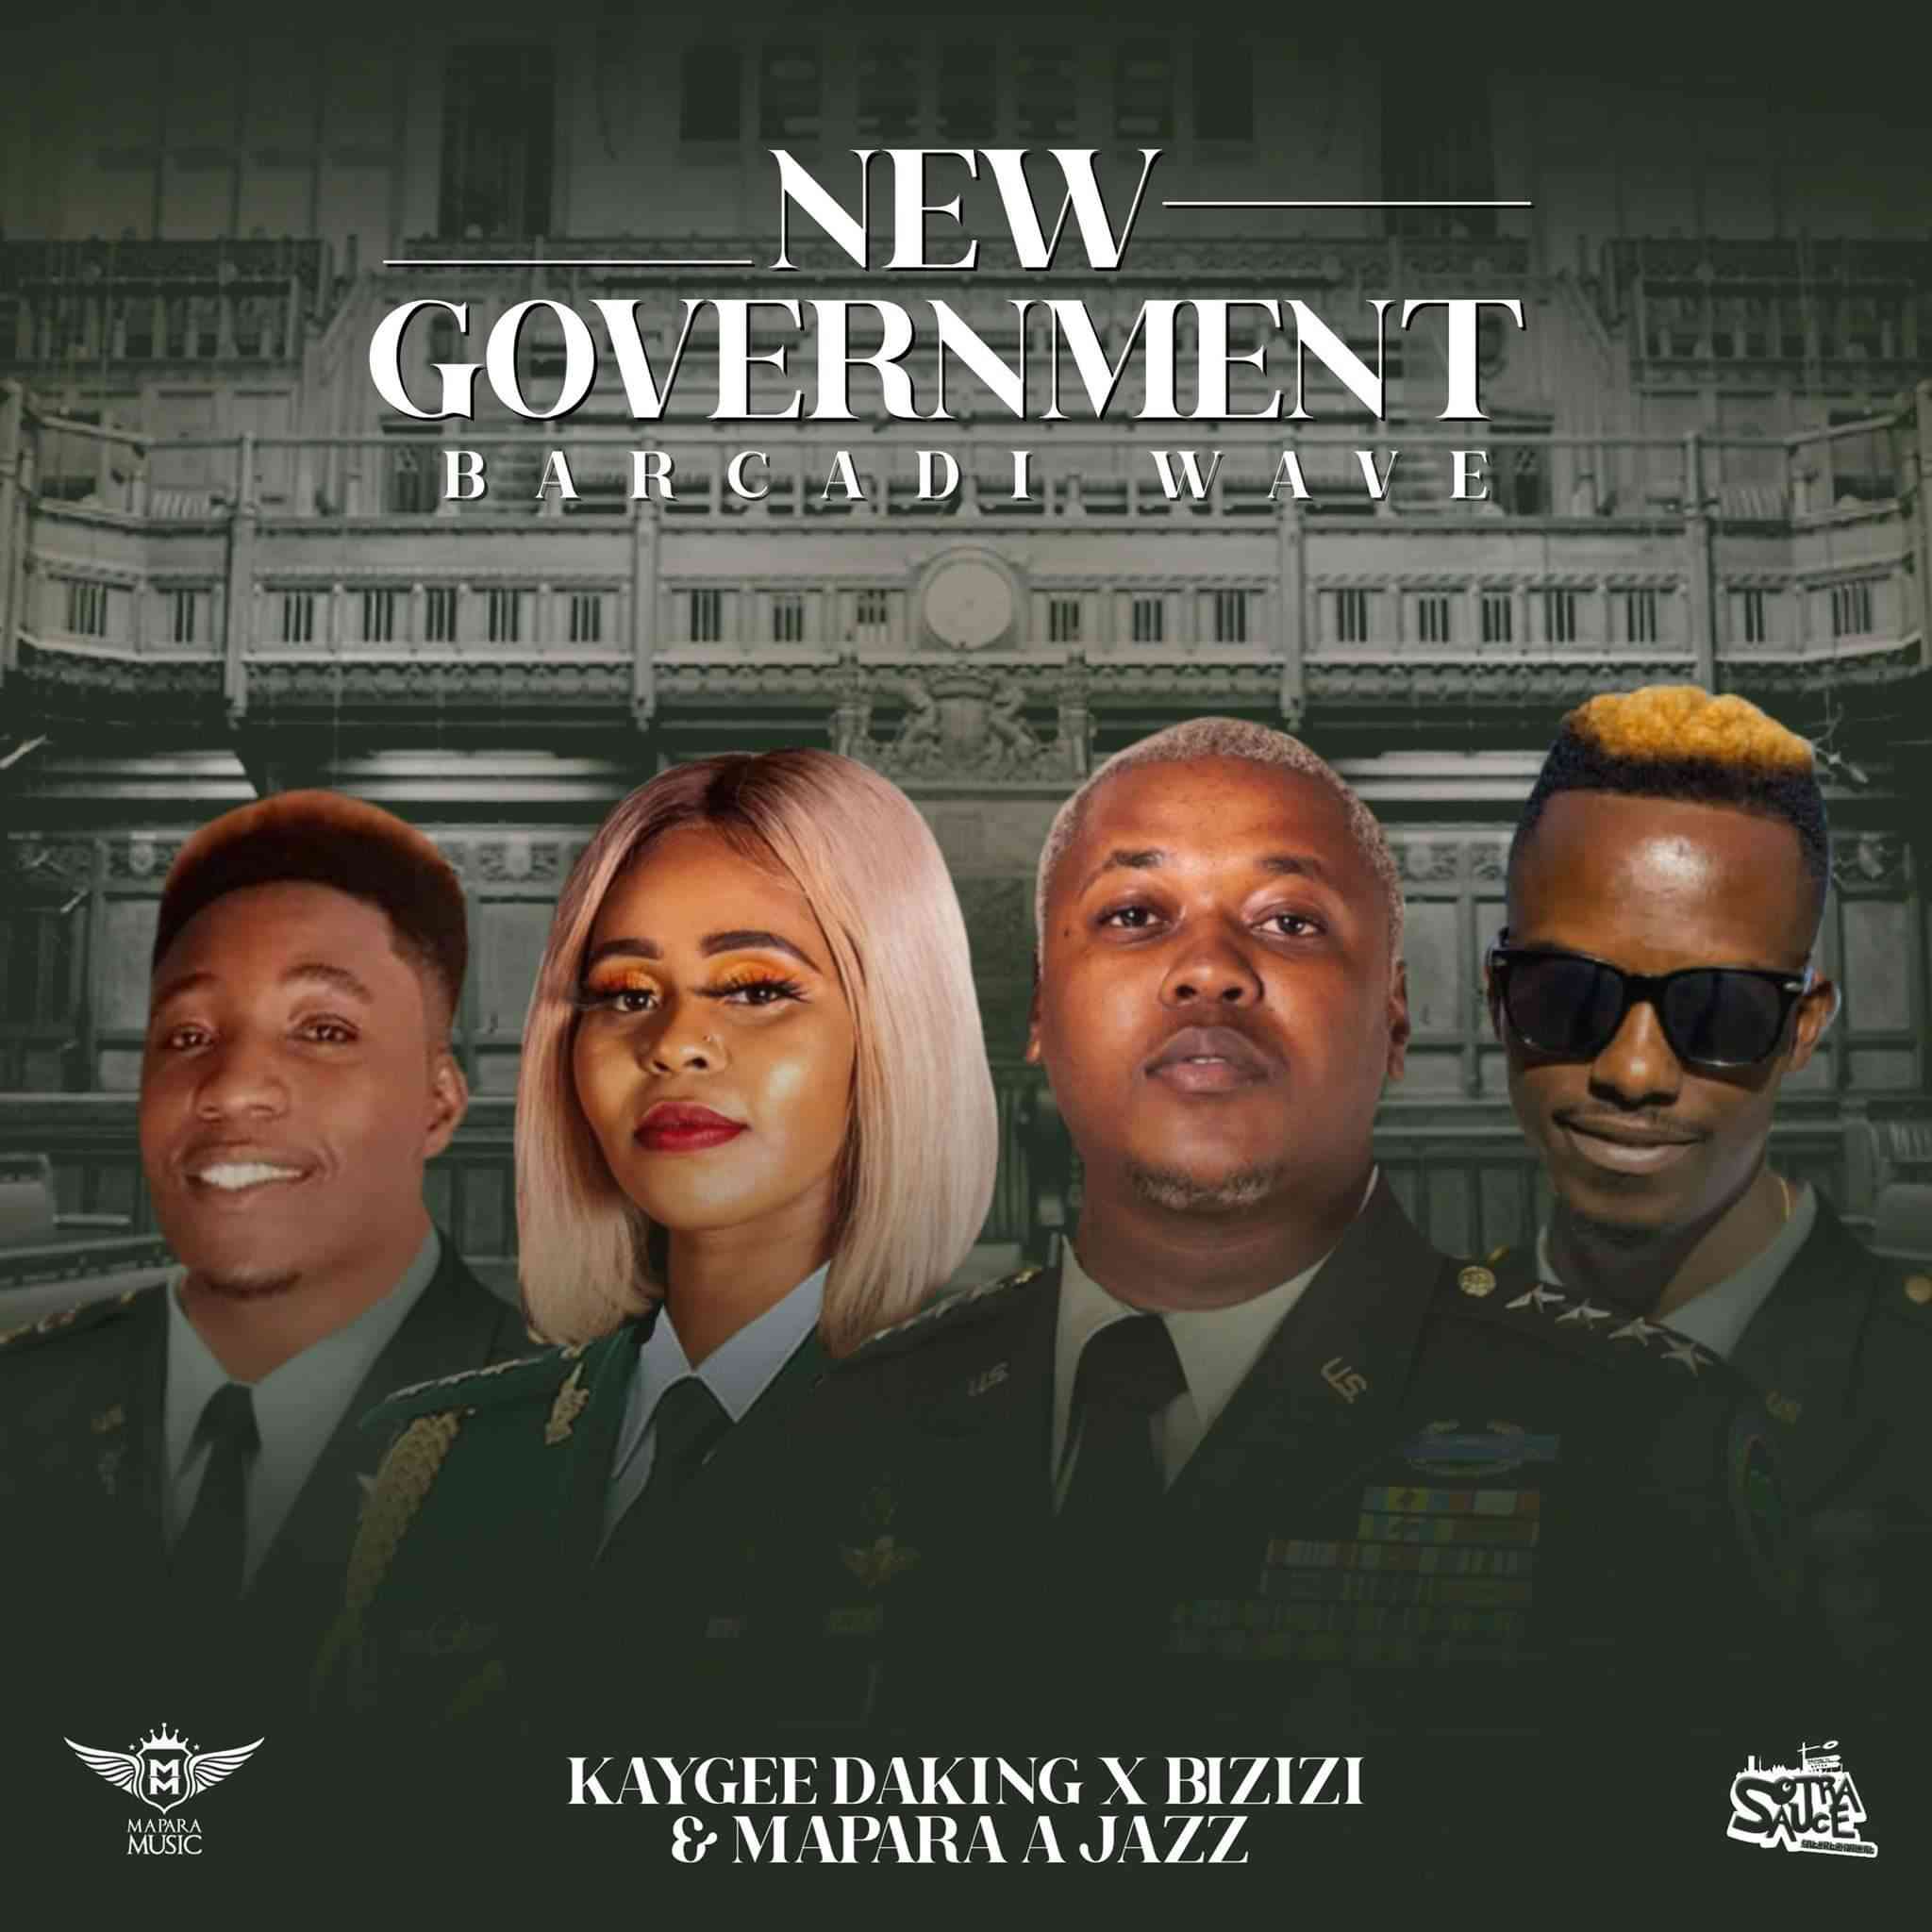 Mapara A Jazz, KayGee DaKing & Bizizi New Government EP